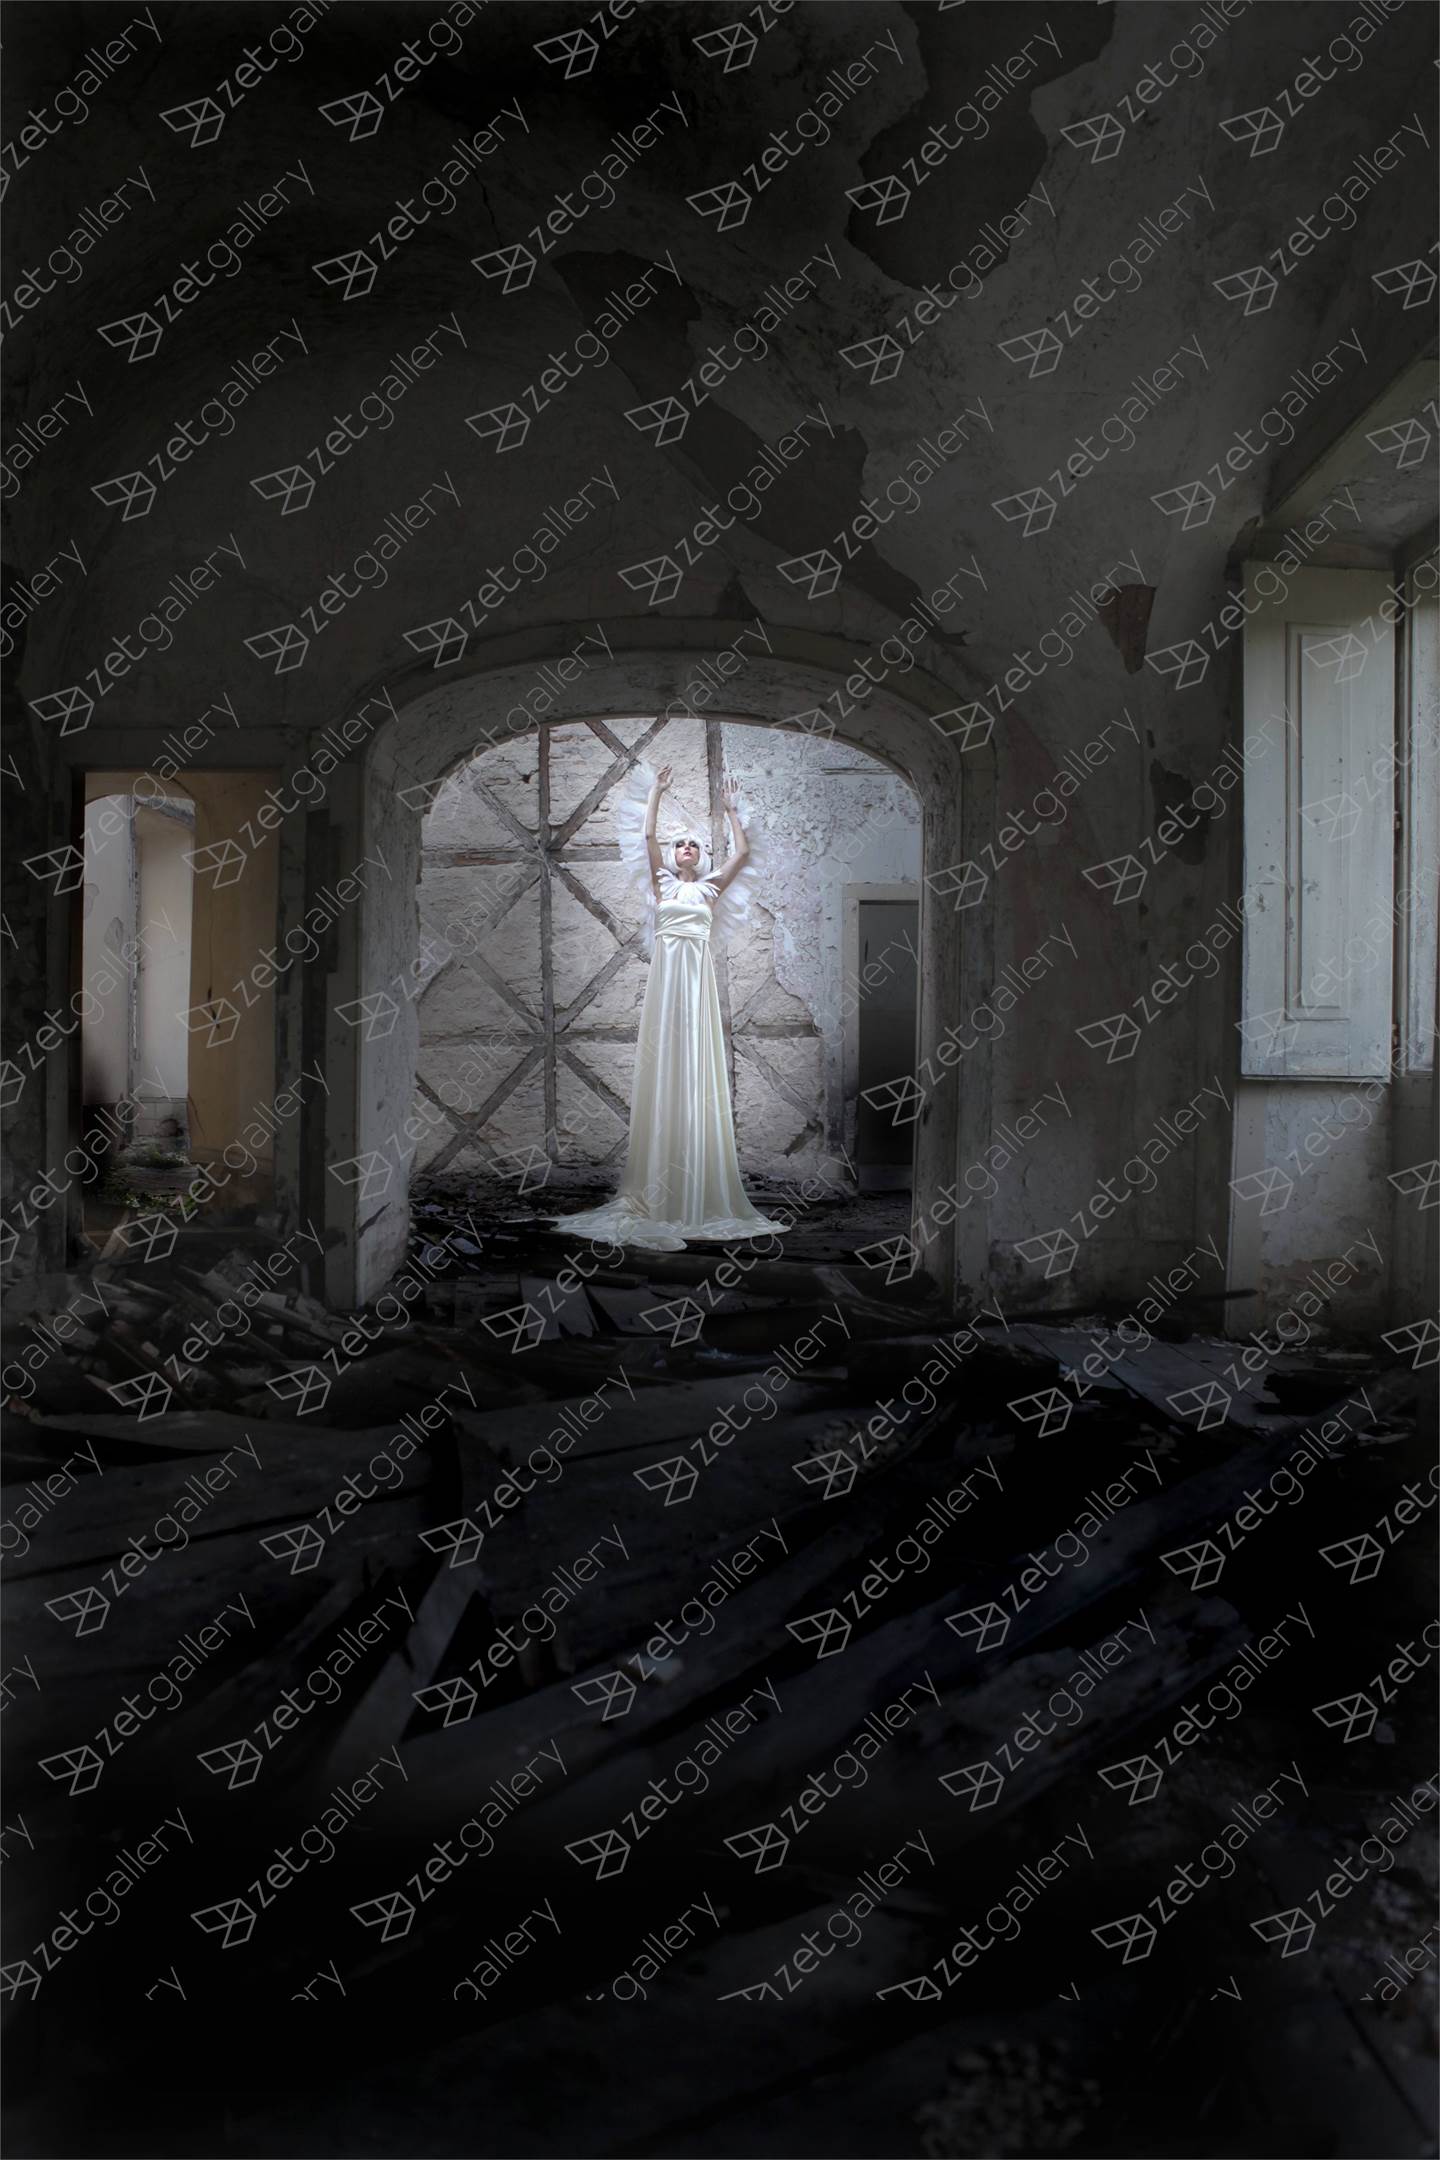 Das ruínas de mim, Fotografia Digital Corpo original por Claudia Clemente